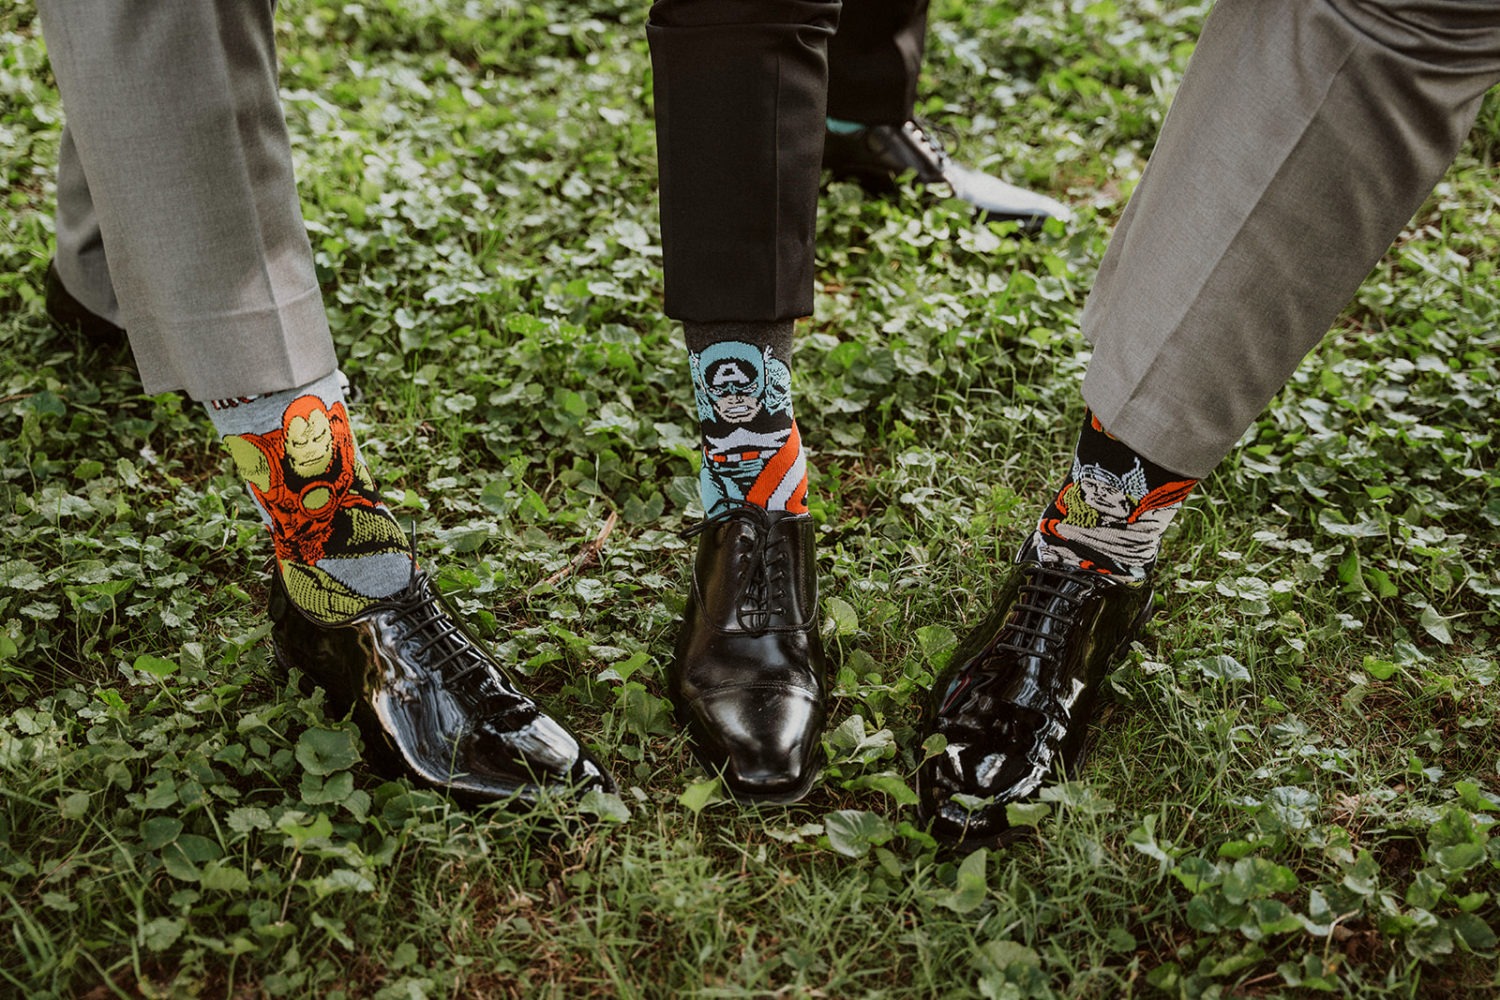 groomsmen show Marvel character socks